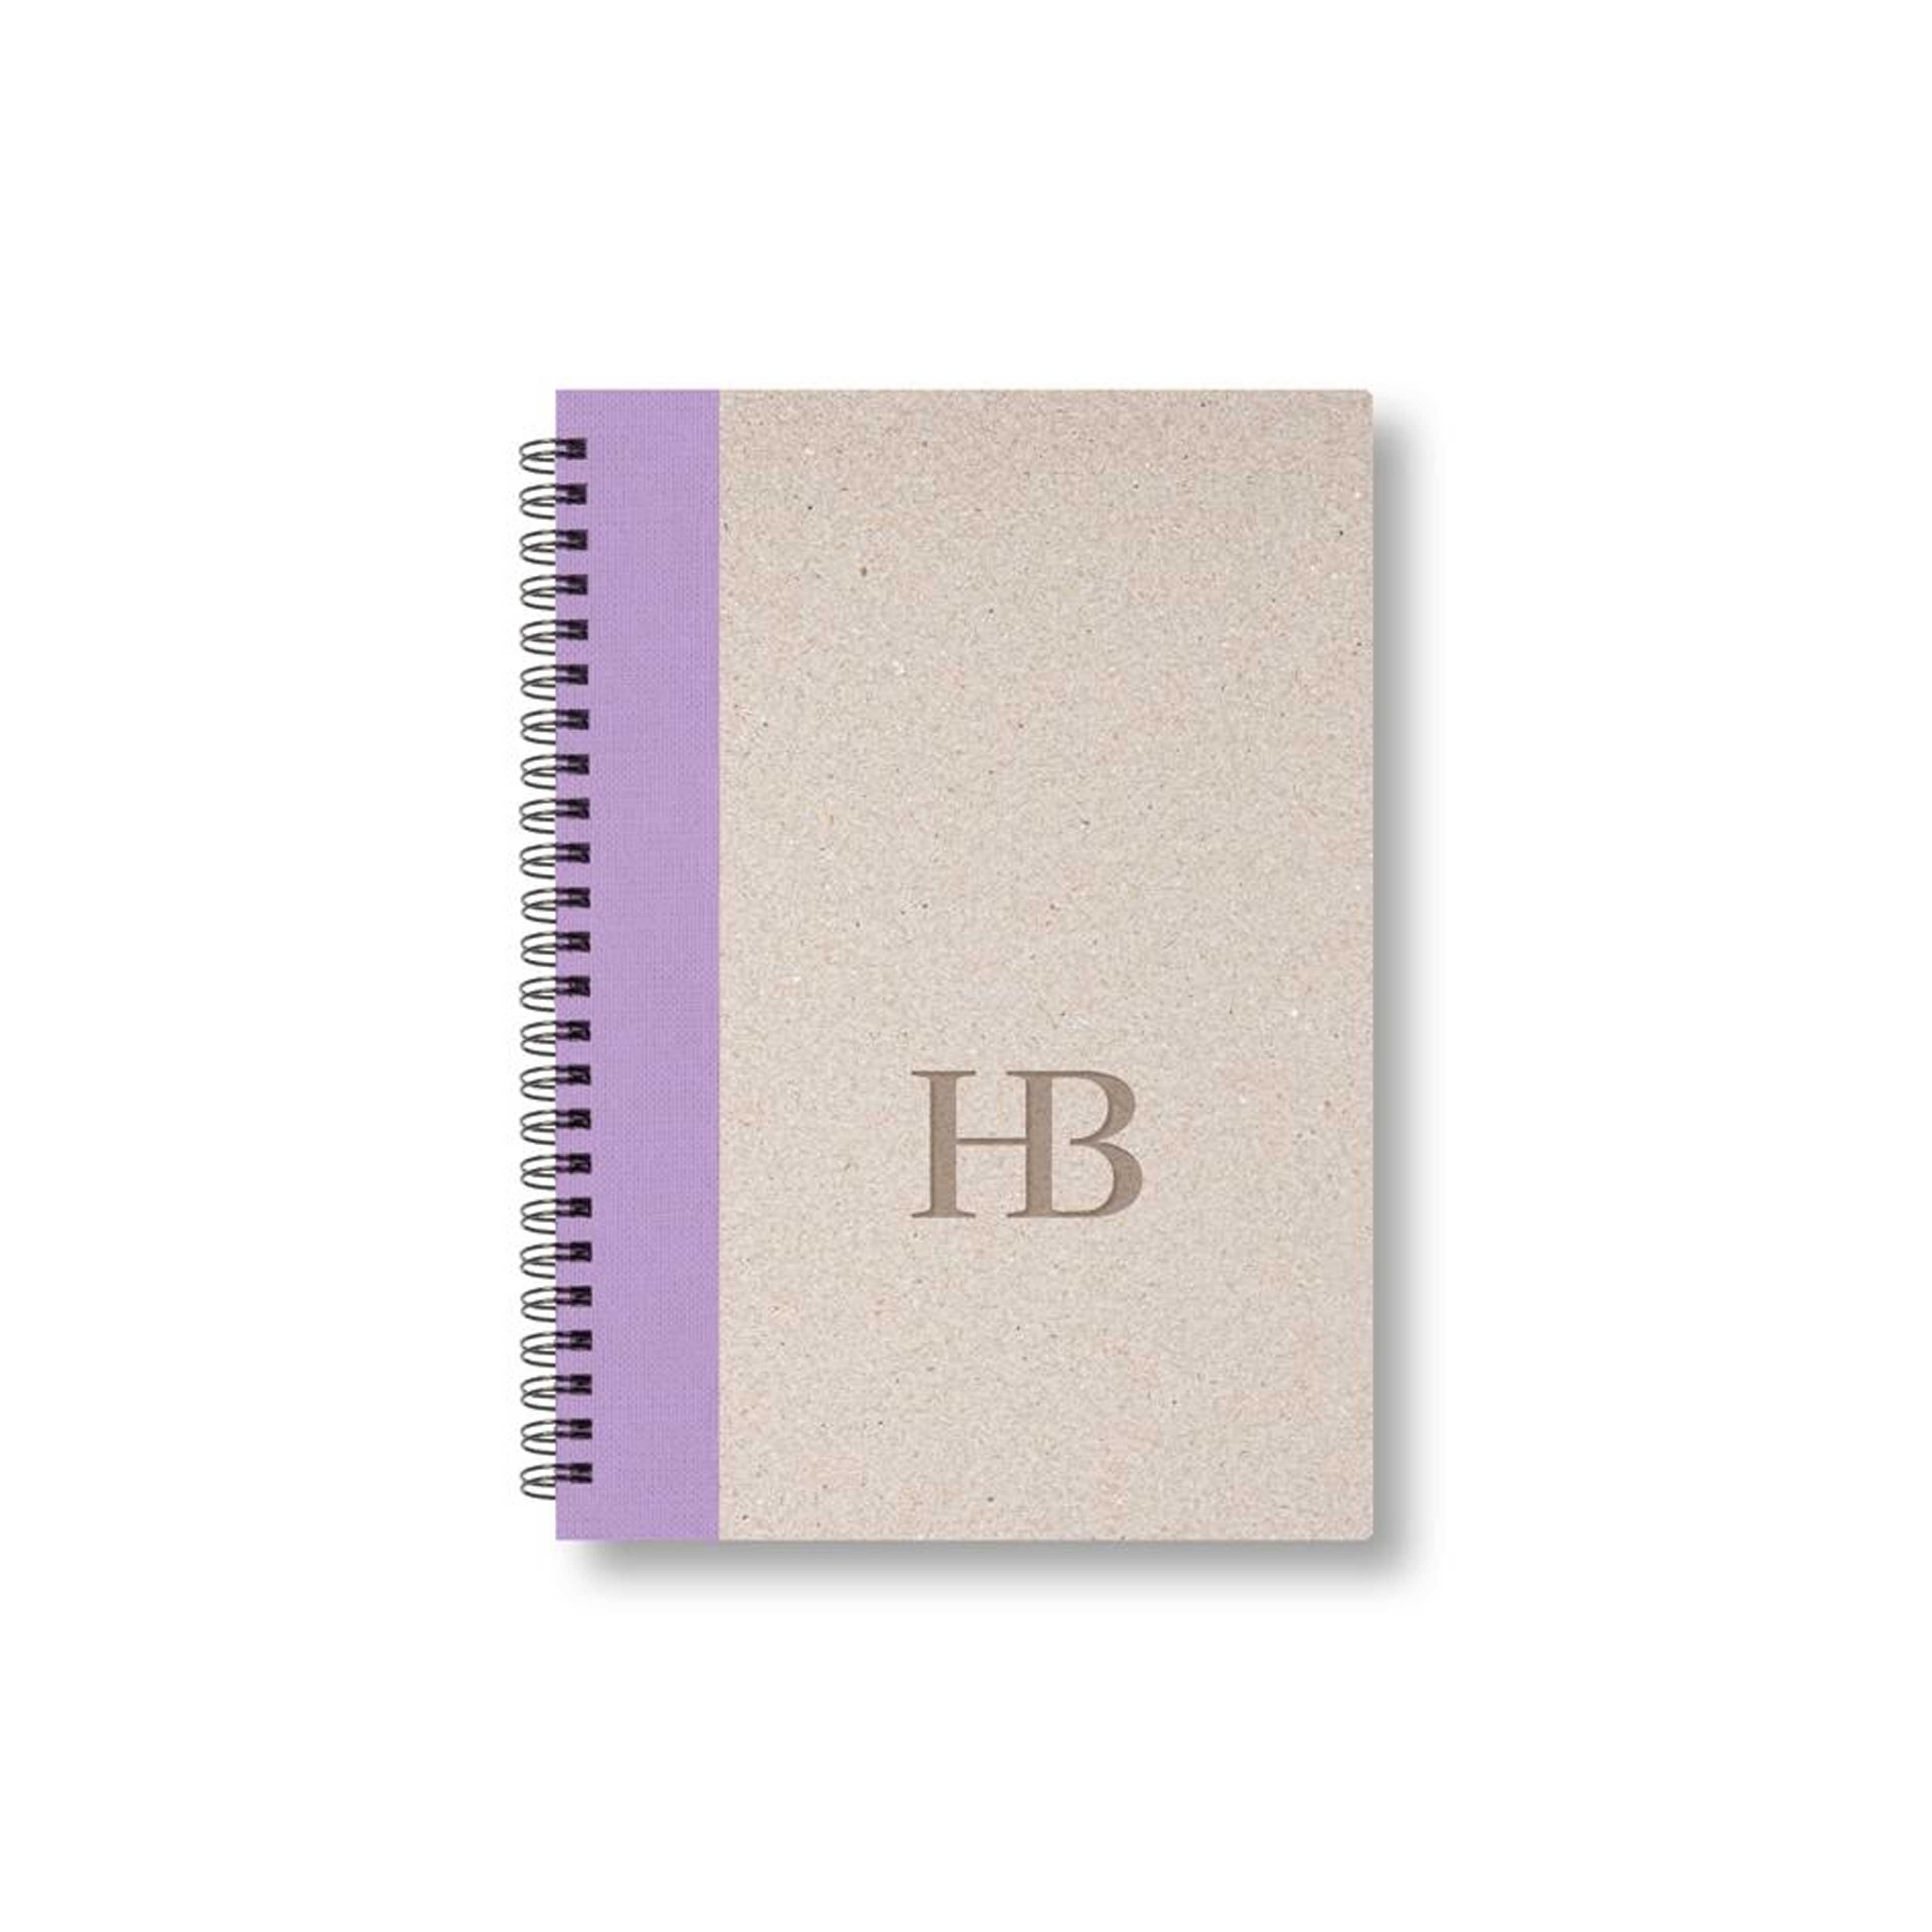 BOBO Zápisník, B6, čtverečkovaný, fialový, konfiguruj si obálku